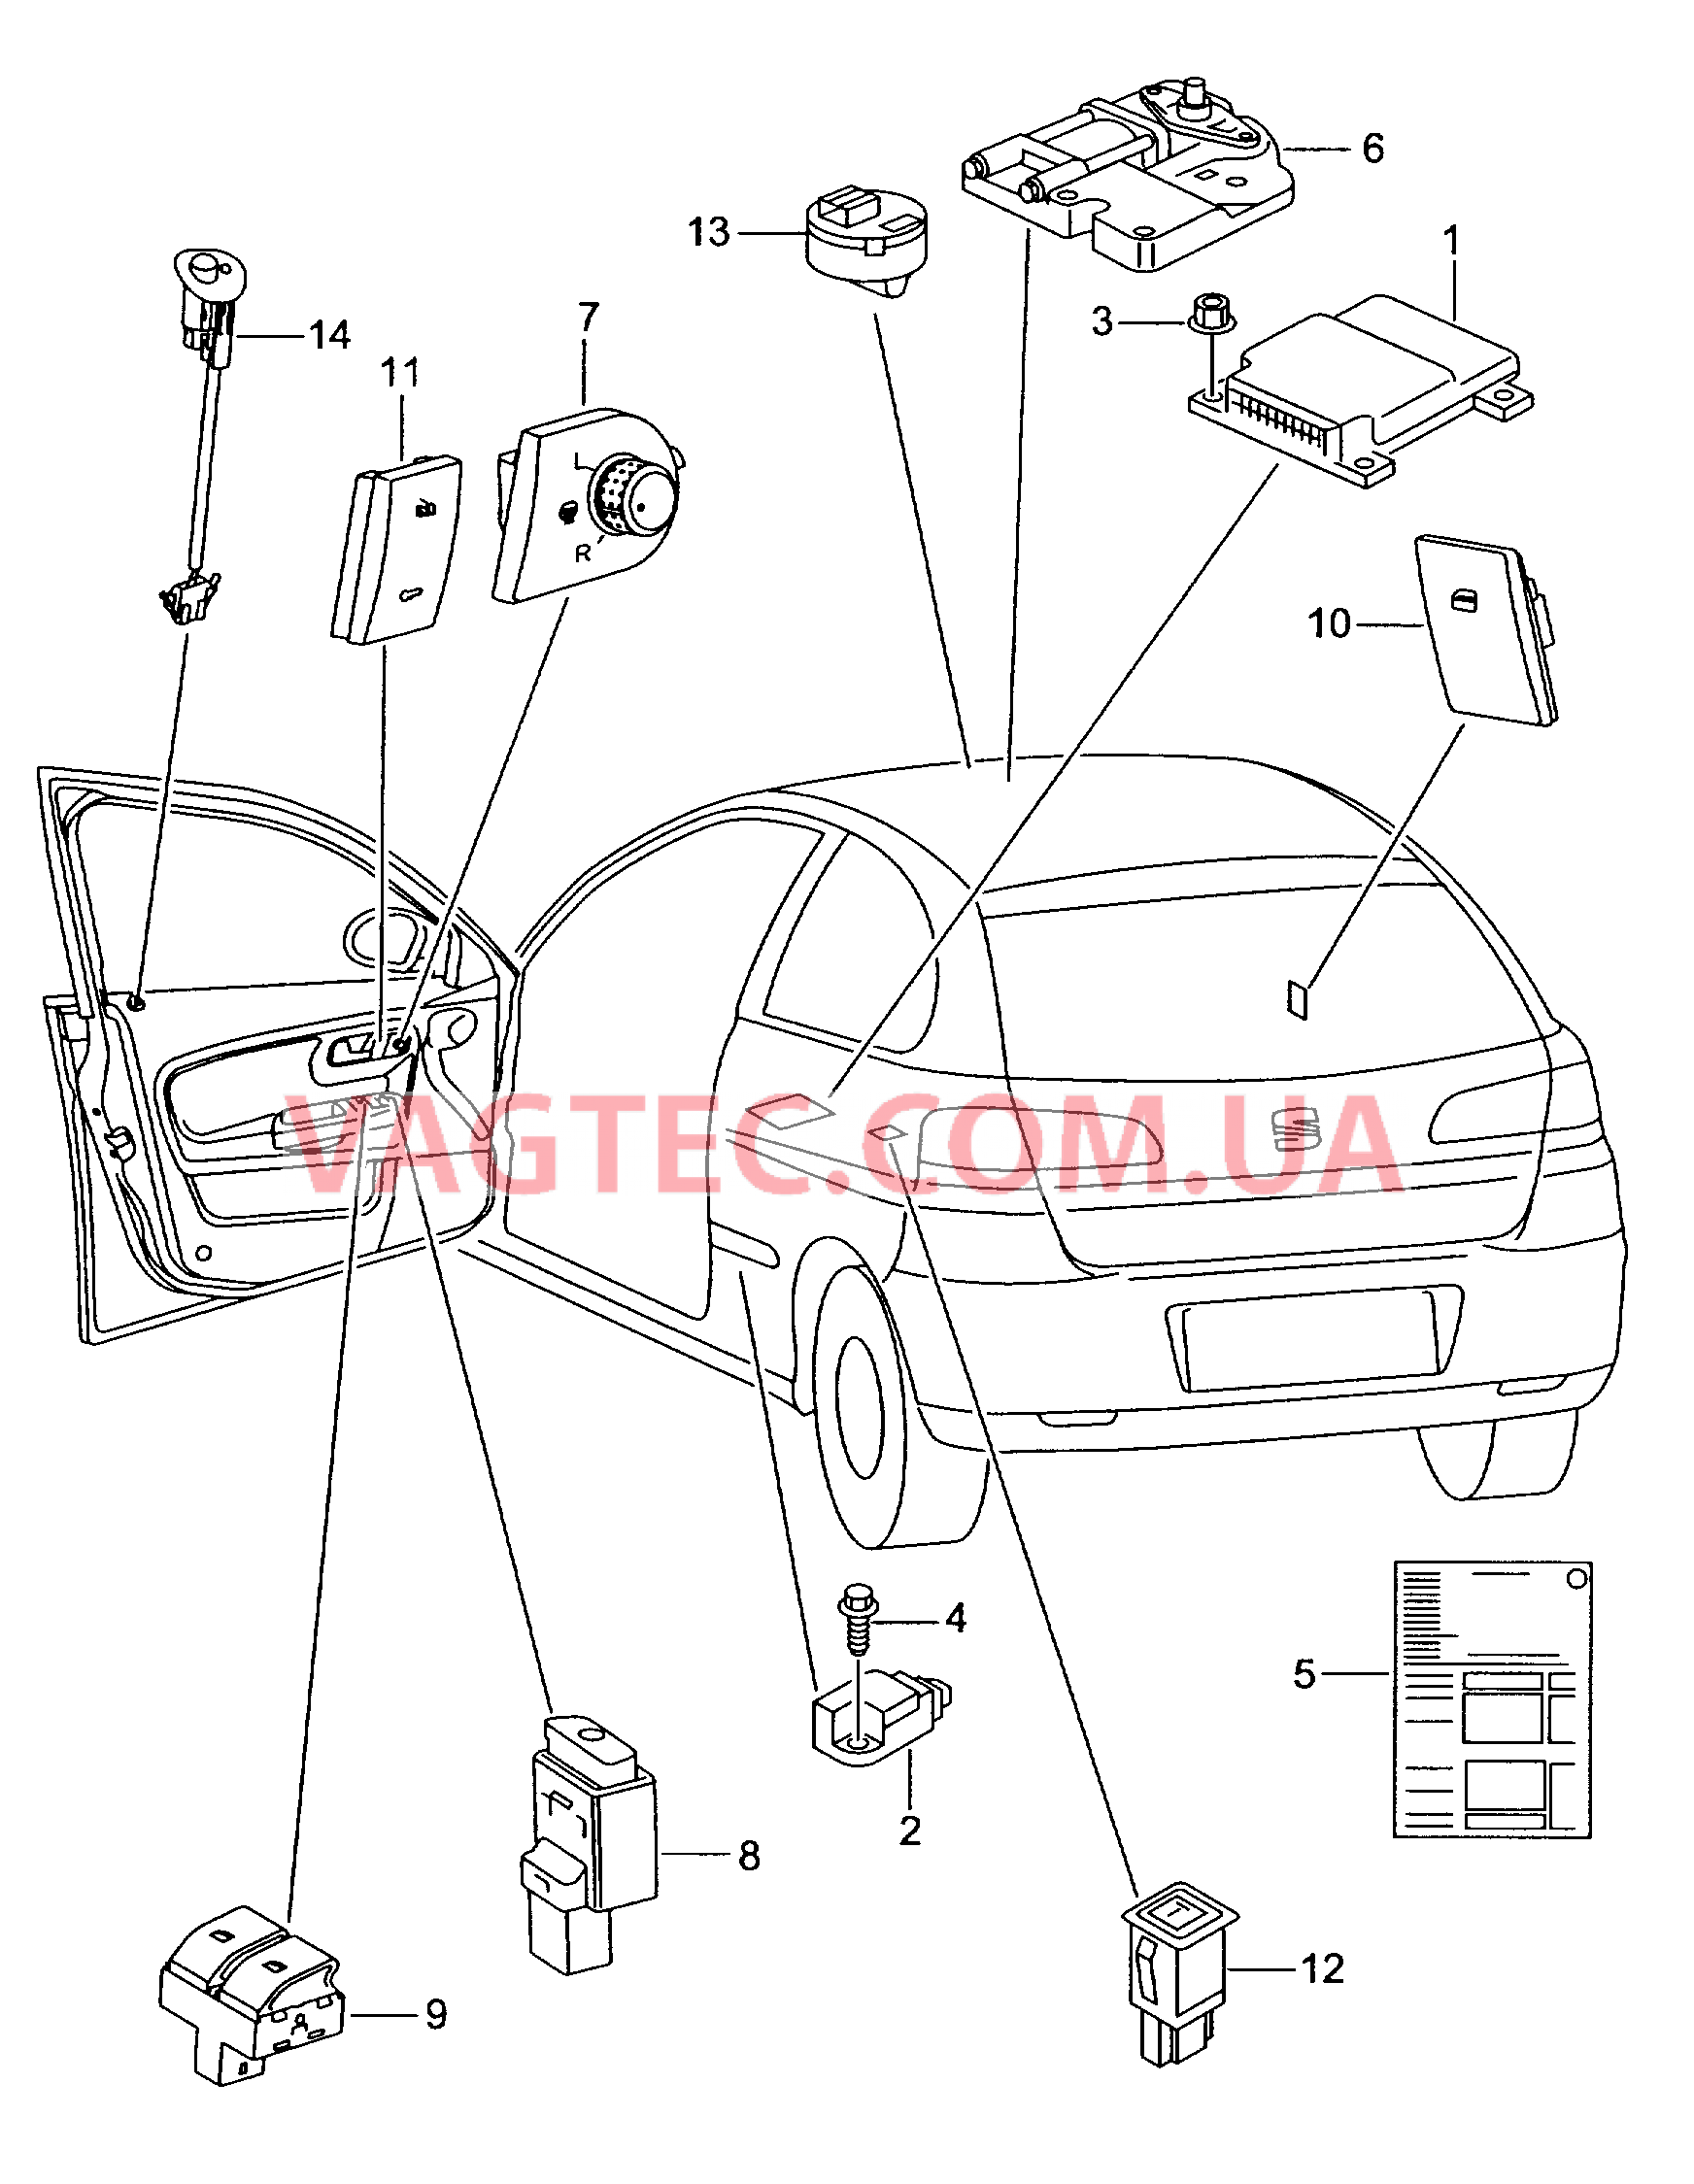 Электродетали для подуш.безоп. Мотор привода люка Выключатель в обивке двери Лампа, контрольная для противоугонной системы  для SEAT CO 2005